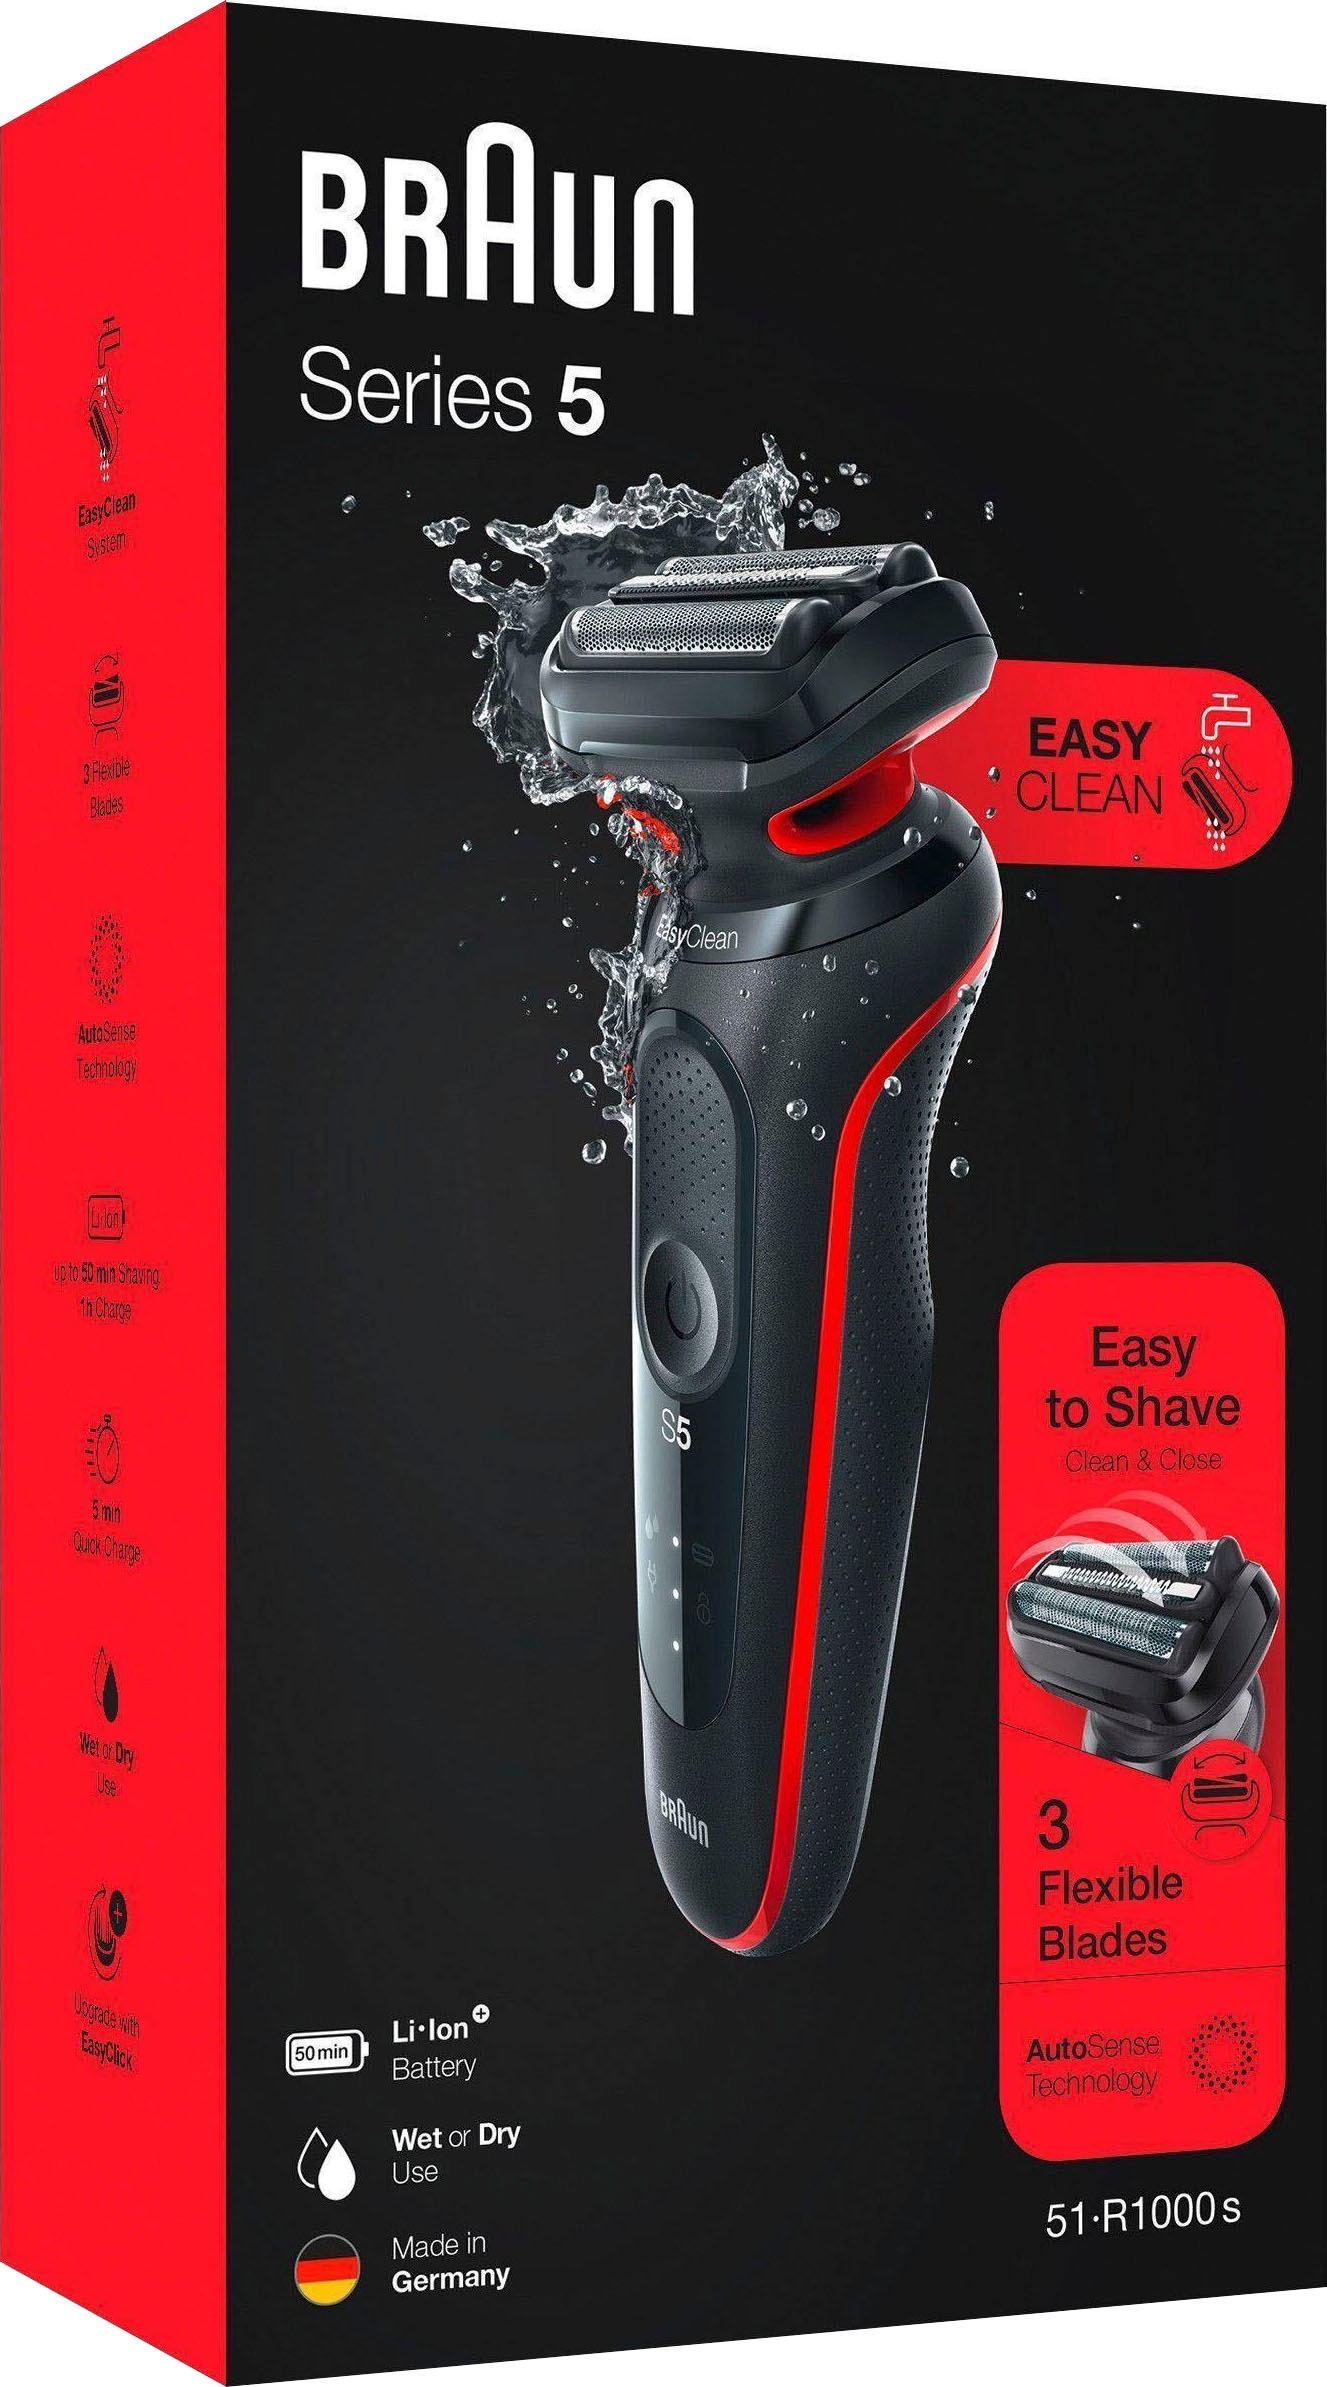 Braun Elektrorasierer »Series 5 51-R1000s«, EasyClean, Wet&Dry im  Online-Shop kaufen